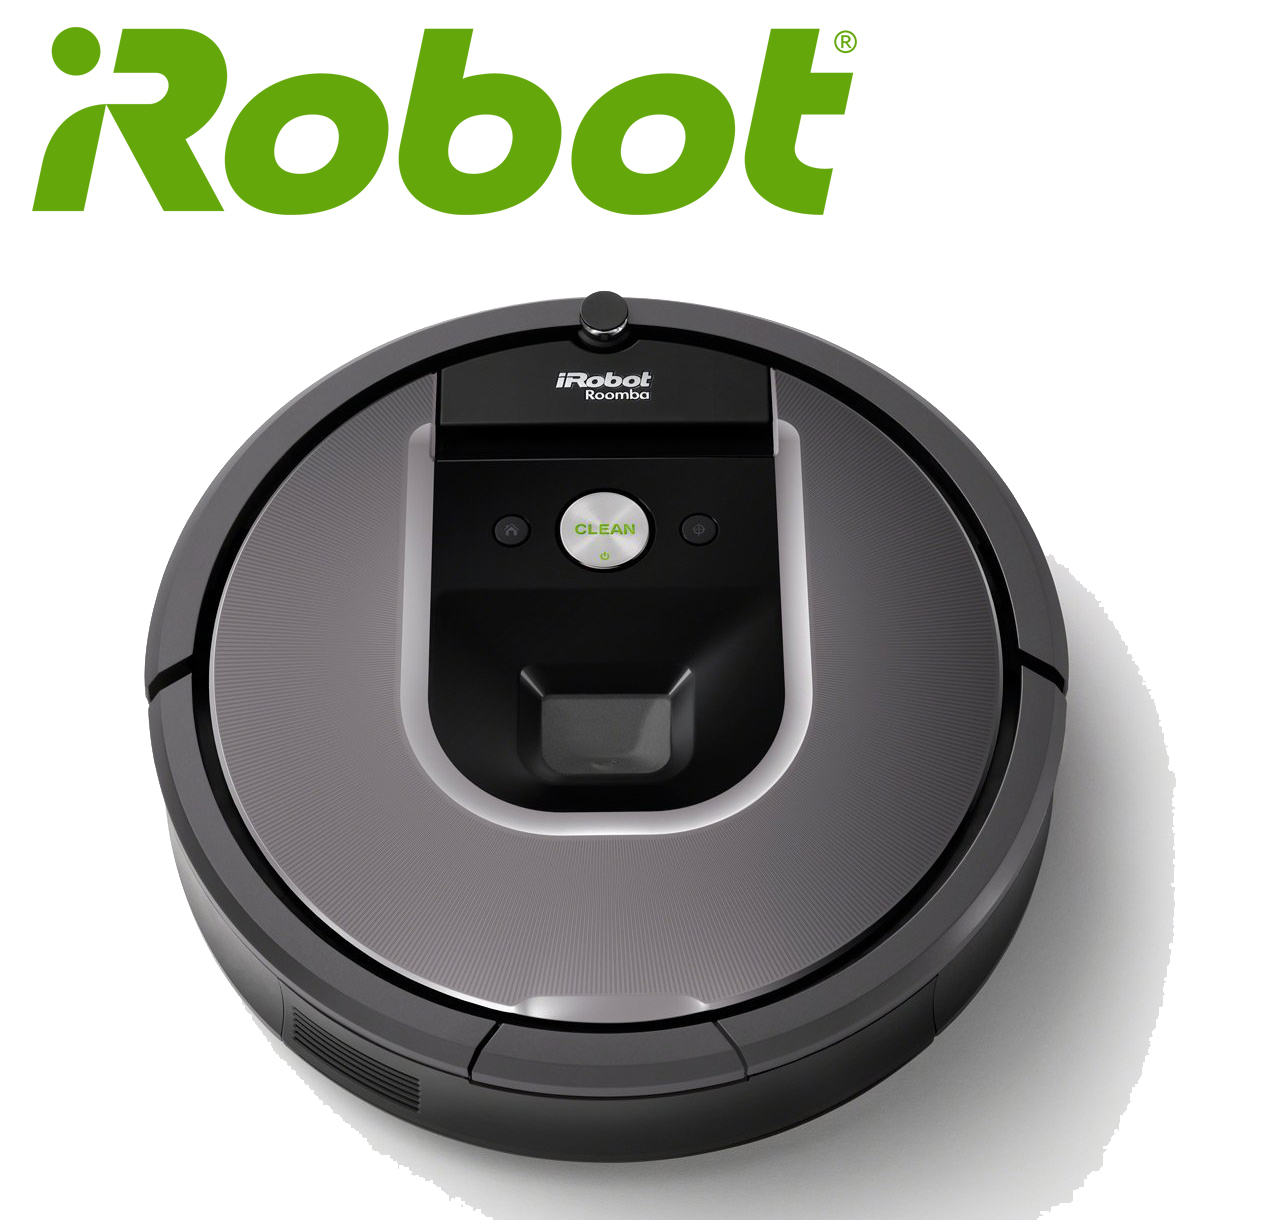 【iRobot】ルンバ960ロボット掃除機